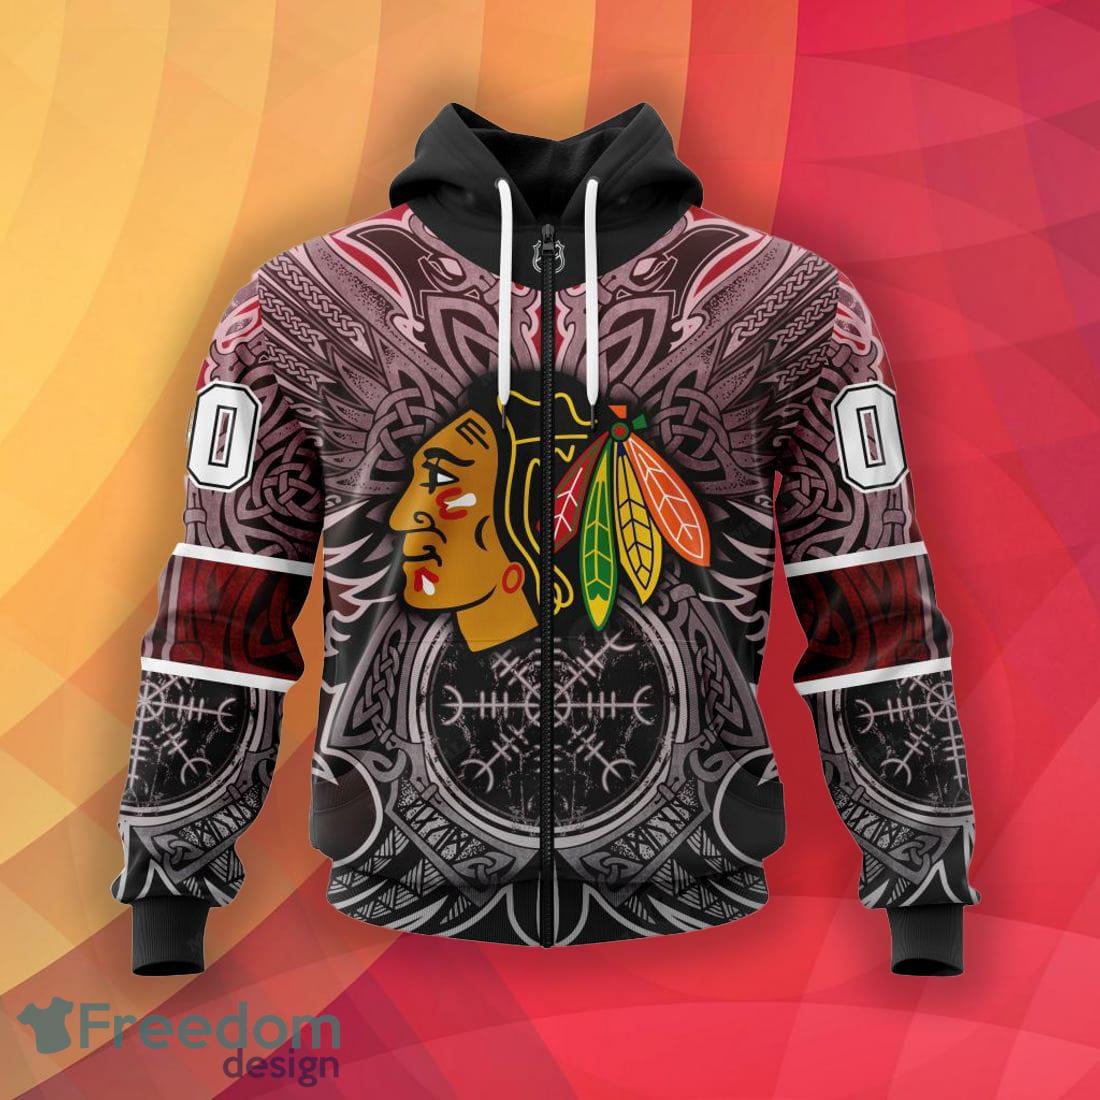 NHL Chicago Blackhawks Hoodies & Sweatshirts